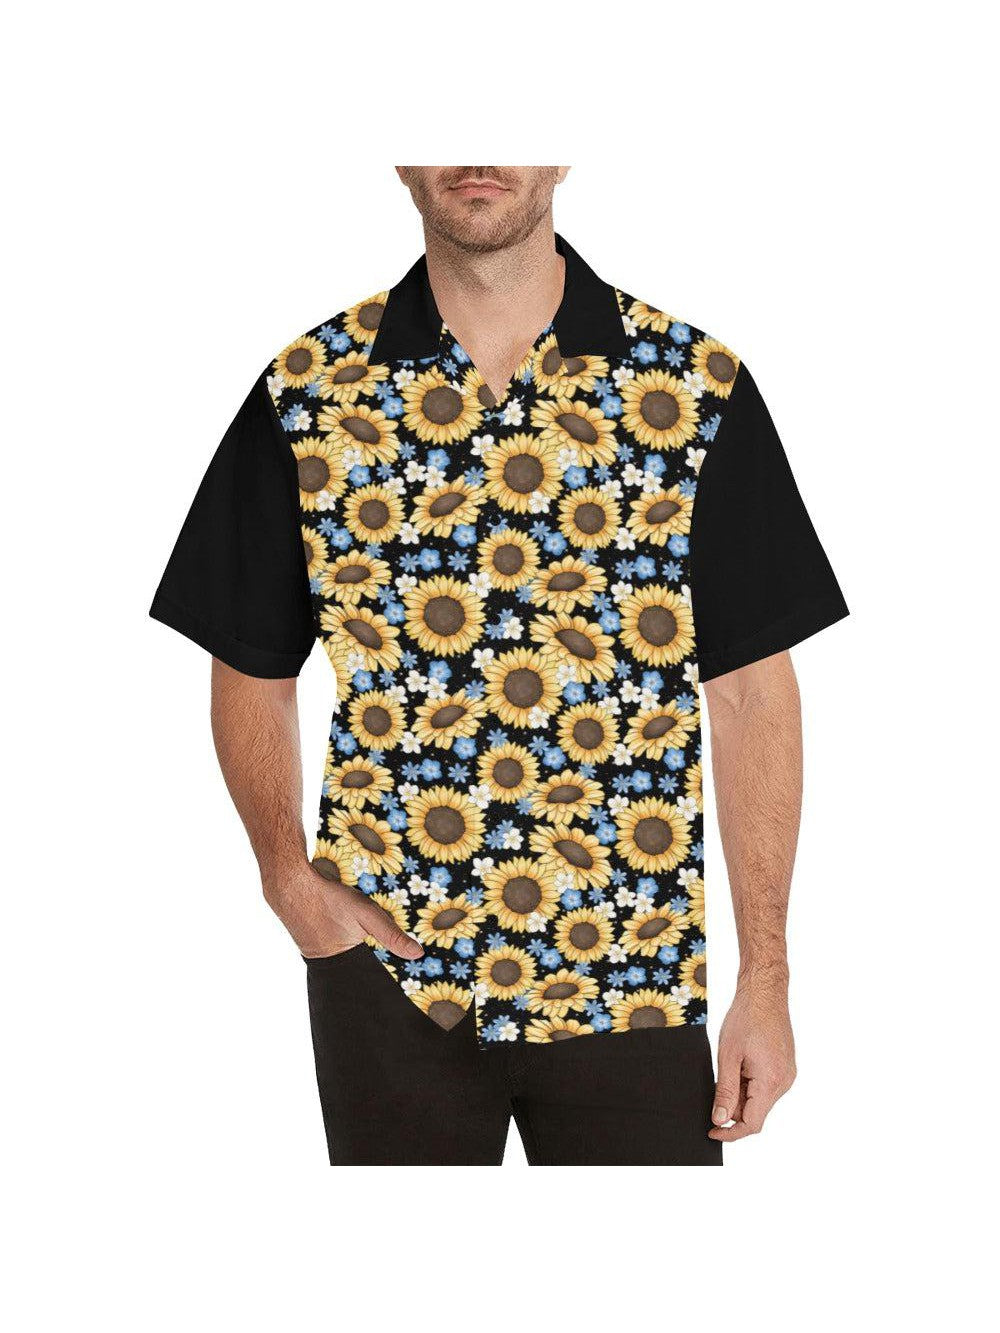 Sunflowers Button Up Shirt